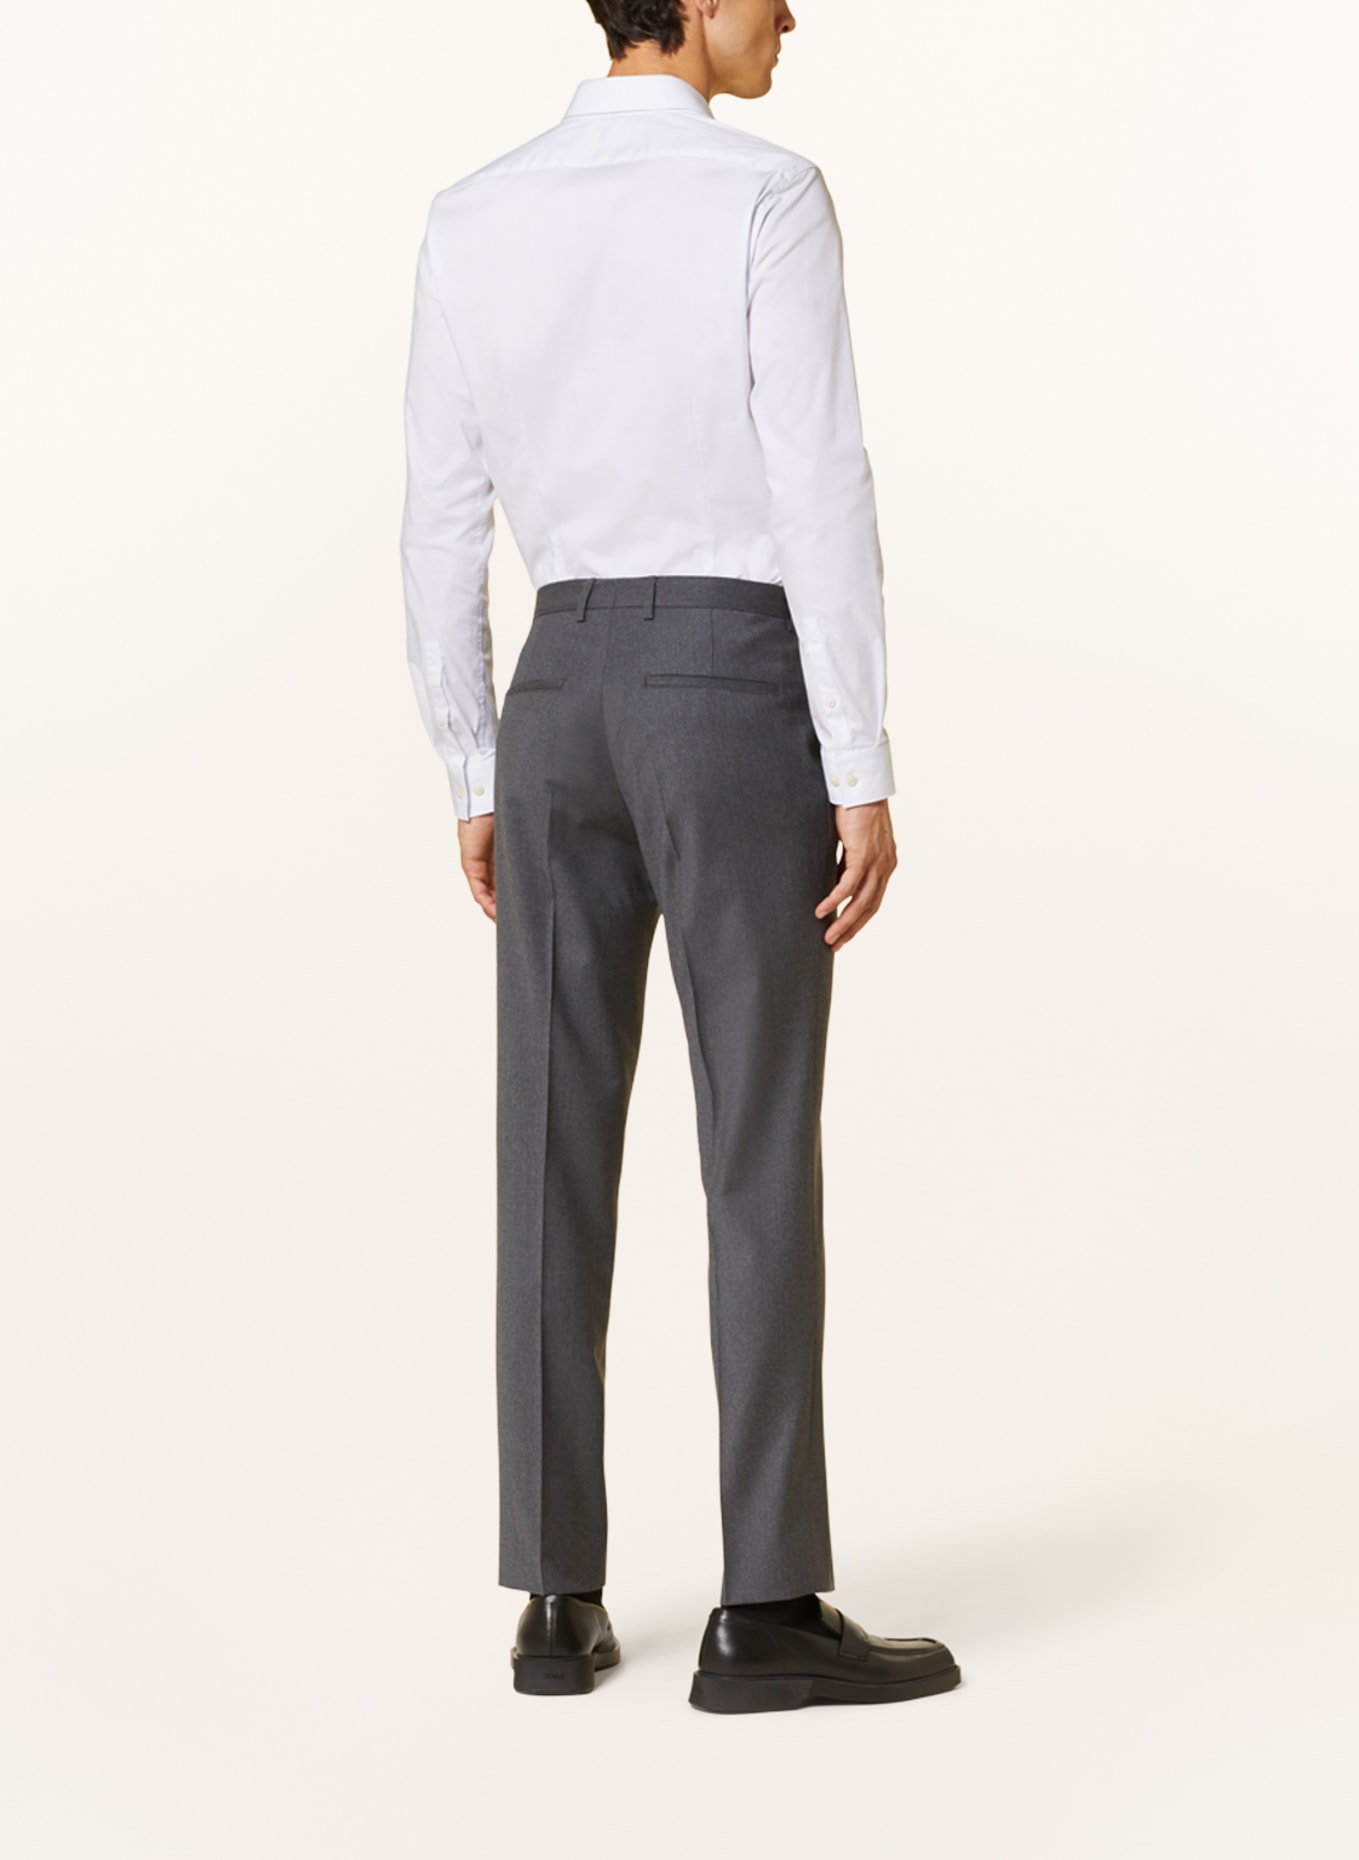 SAND COPENHAGEN Suit trousers CRAIG modern fit, Color: 170 Light Grey (Image 4)